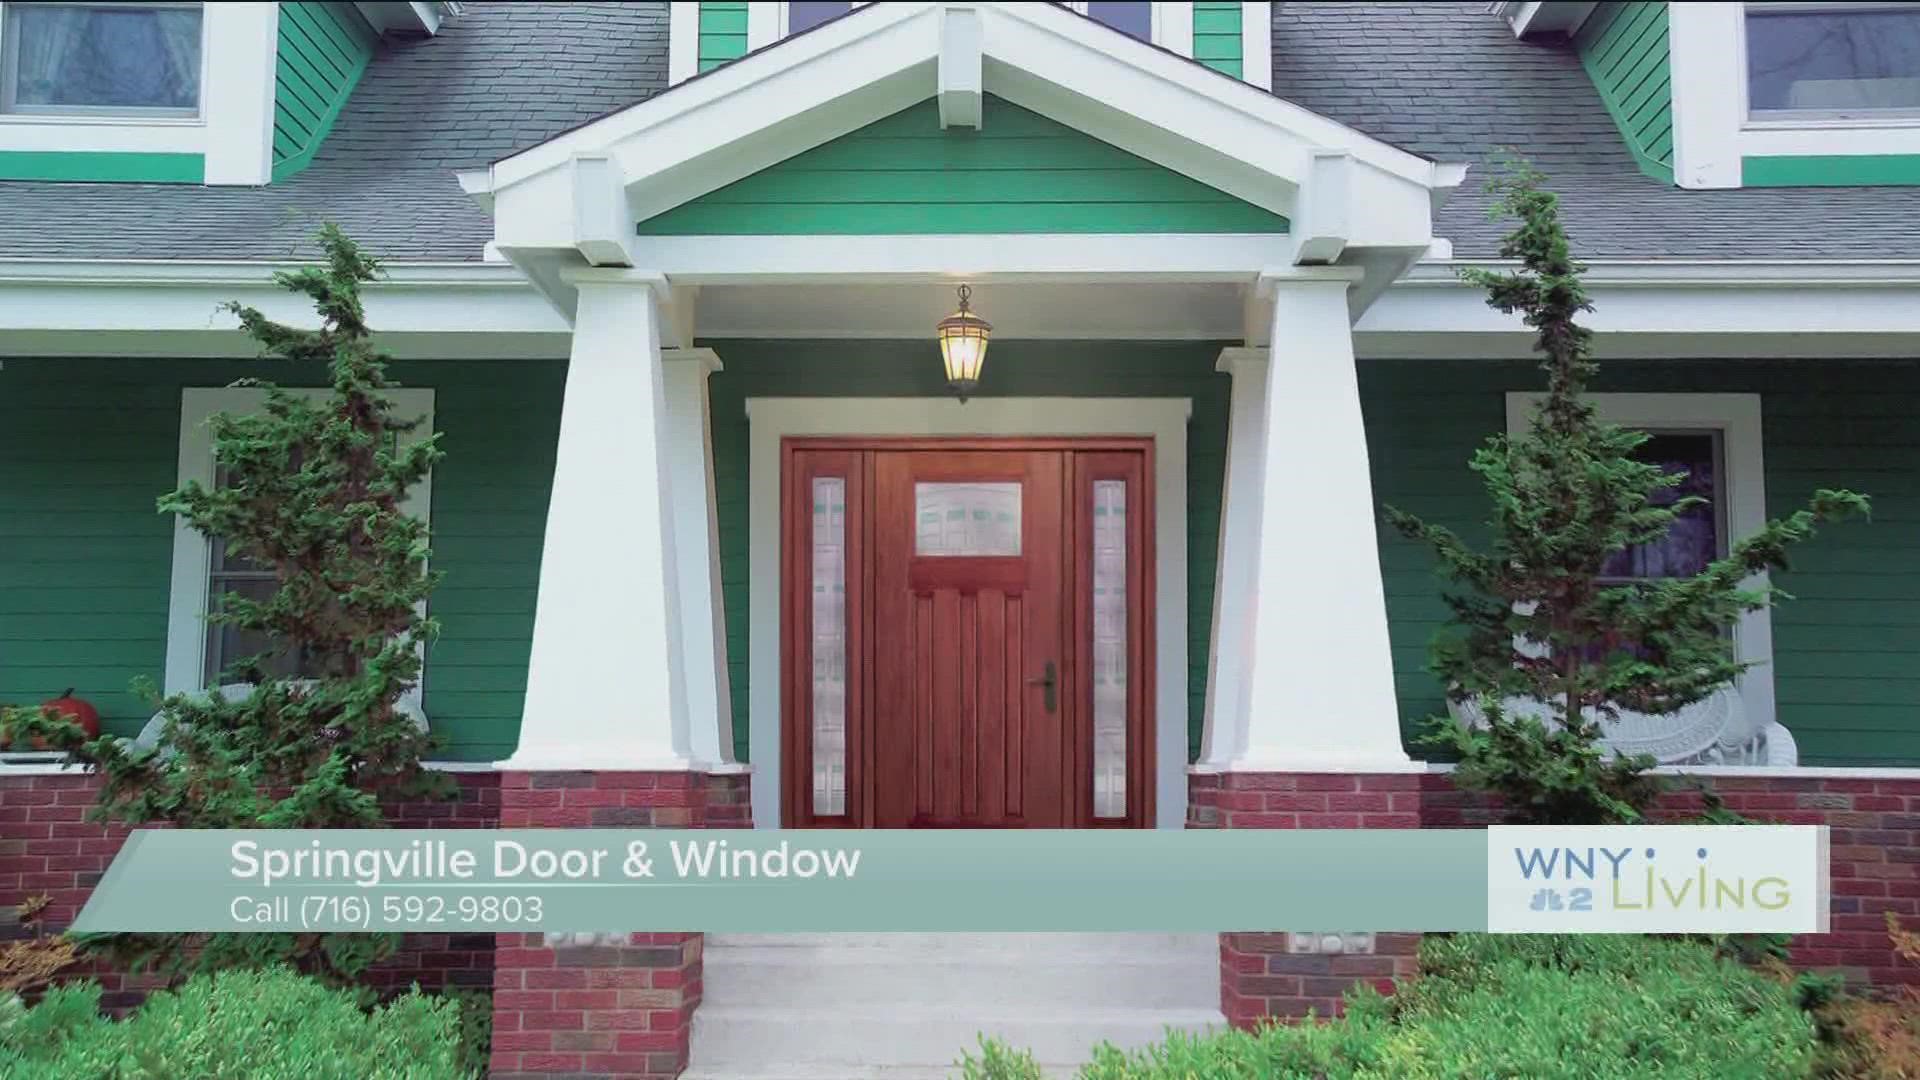 WNY Living - August 6 - Springville Door & Window (THIS VIDEO IS SPONSORED BY SPRINGVILLE DOOR & WINDOW)